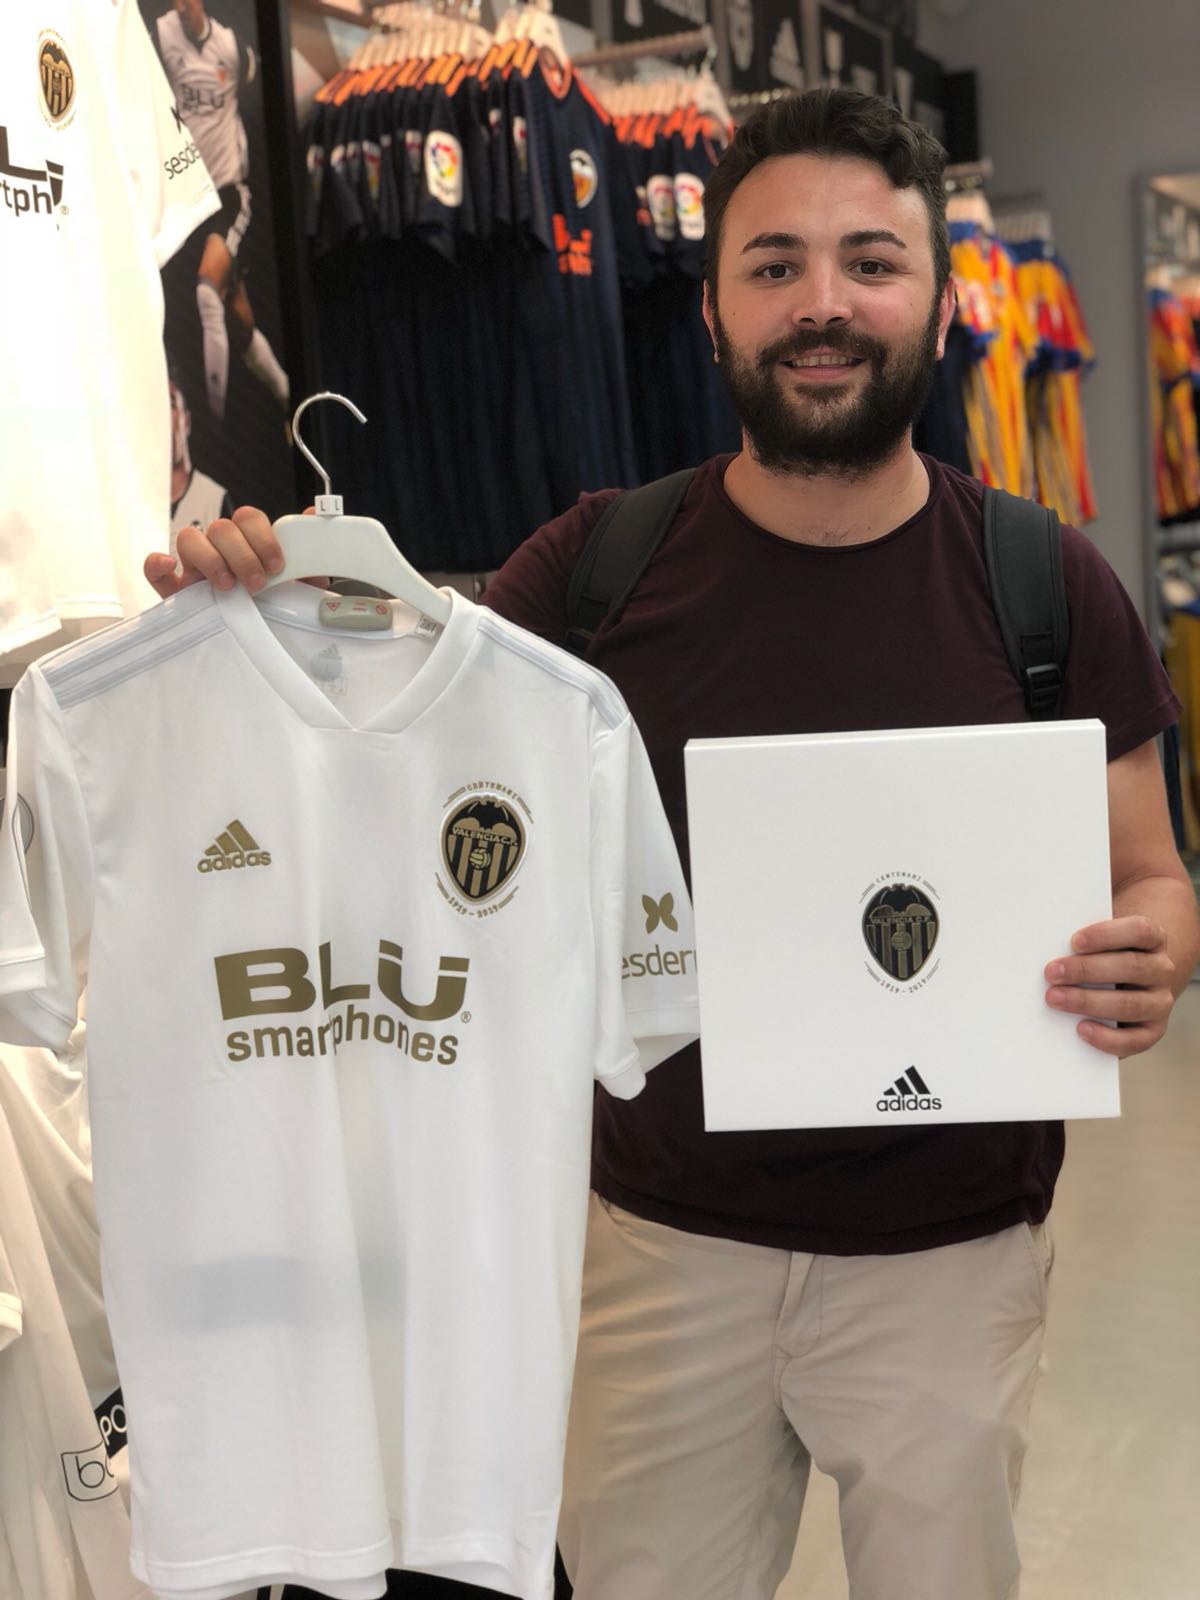 Valencia CF on Twitter: "@M_vcf_M Hola Manu, la serigrafía en la camiseta de juego y en la edición coleccionista es negro." Twitter